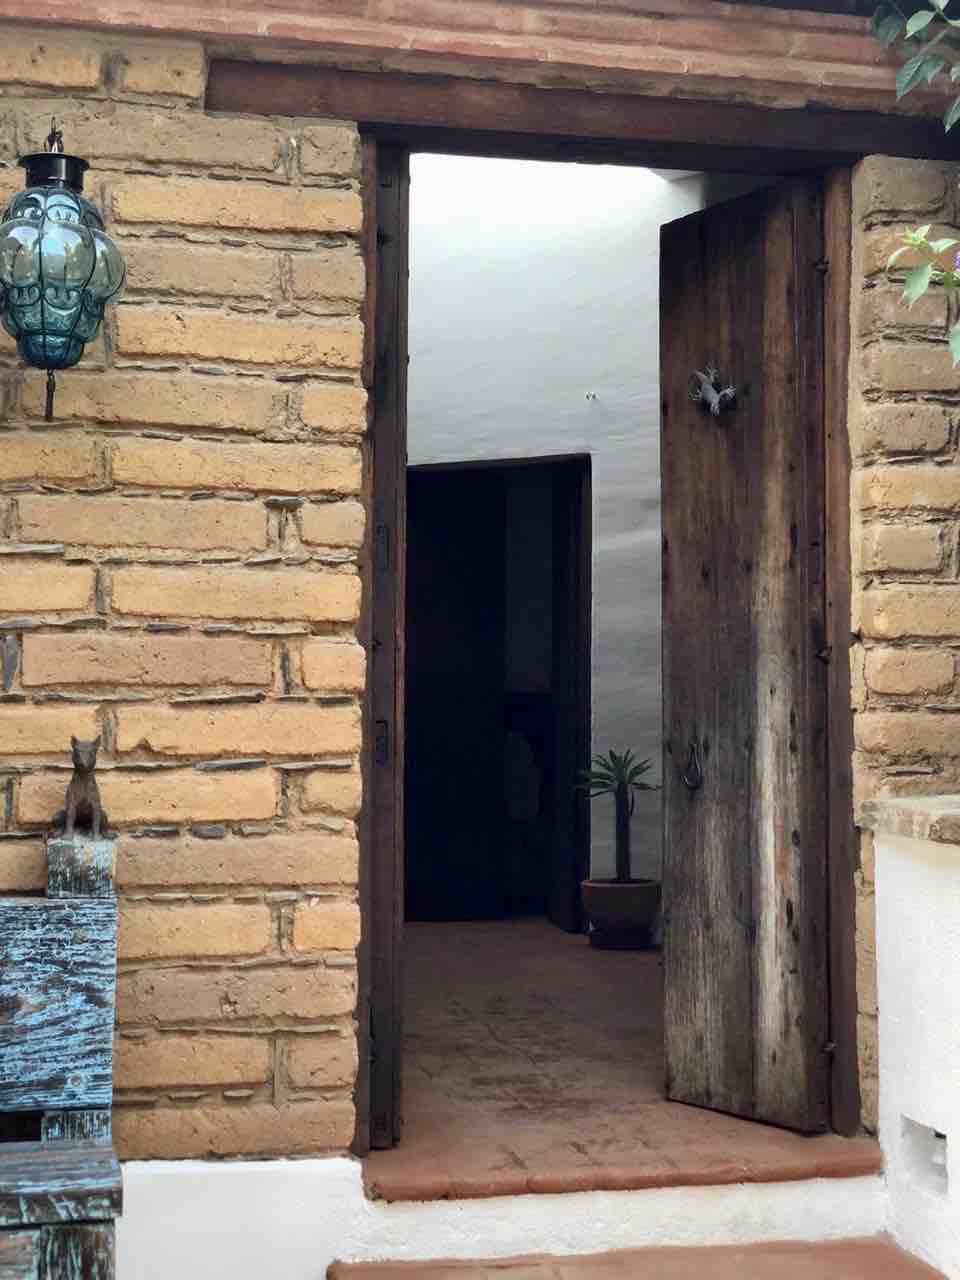 Casa de Tierra, Oaxaca